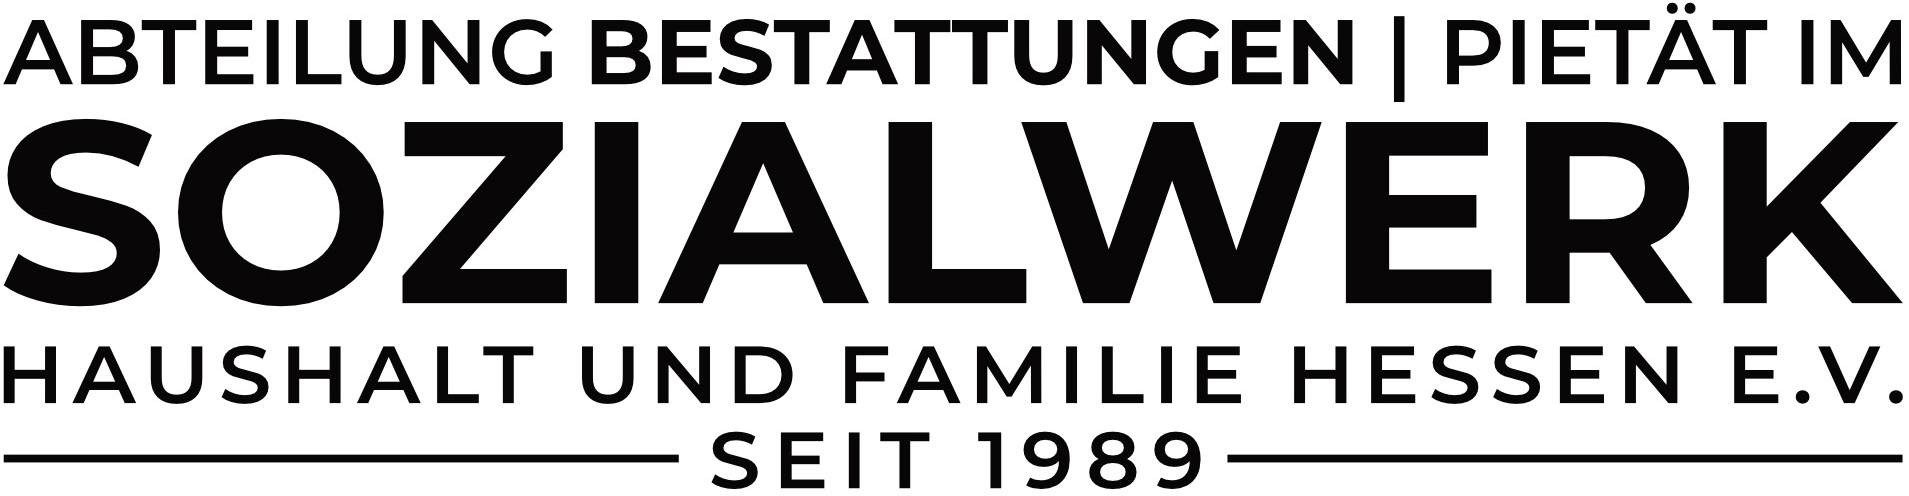 Logo Pietät